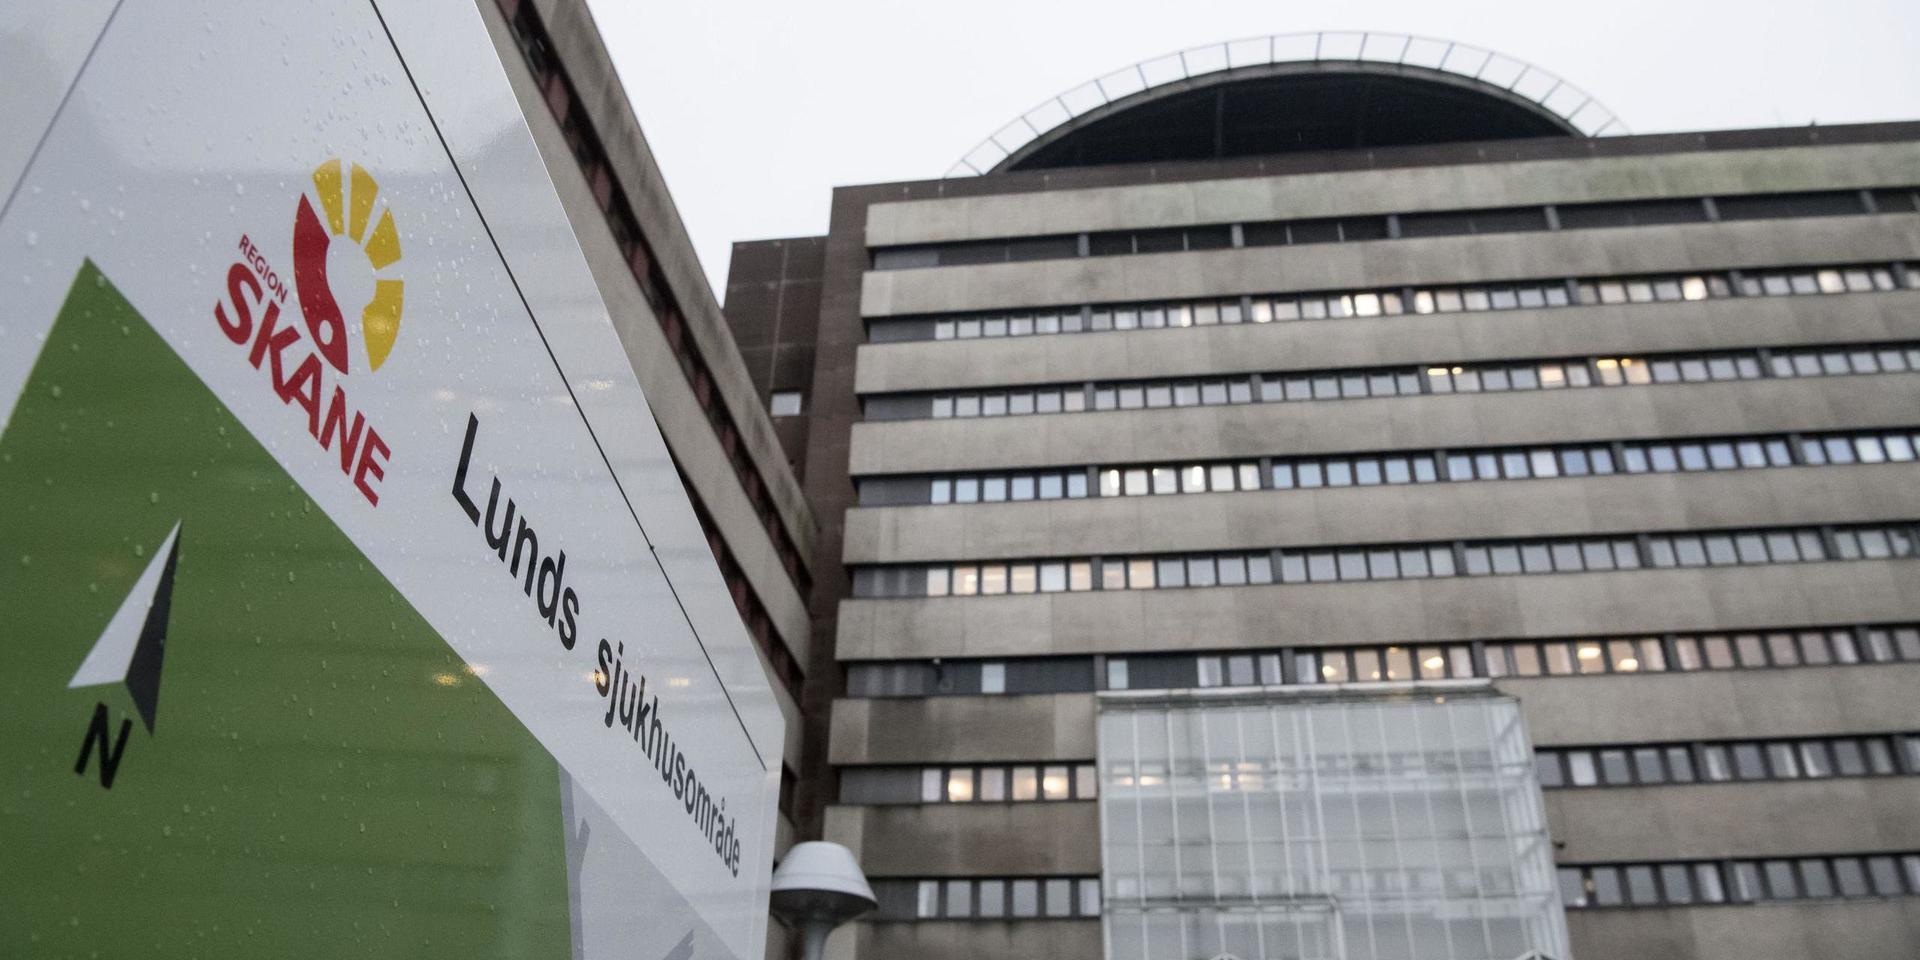 Sju patienter smittades inne på en infektionsavdelning vid ett coronautbrott på Skånes universitetssjukhus. Två av dem avled. Arkivbild.